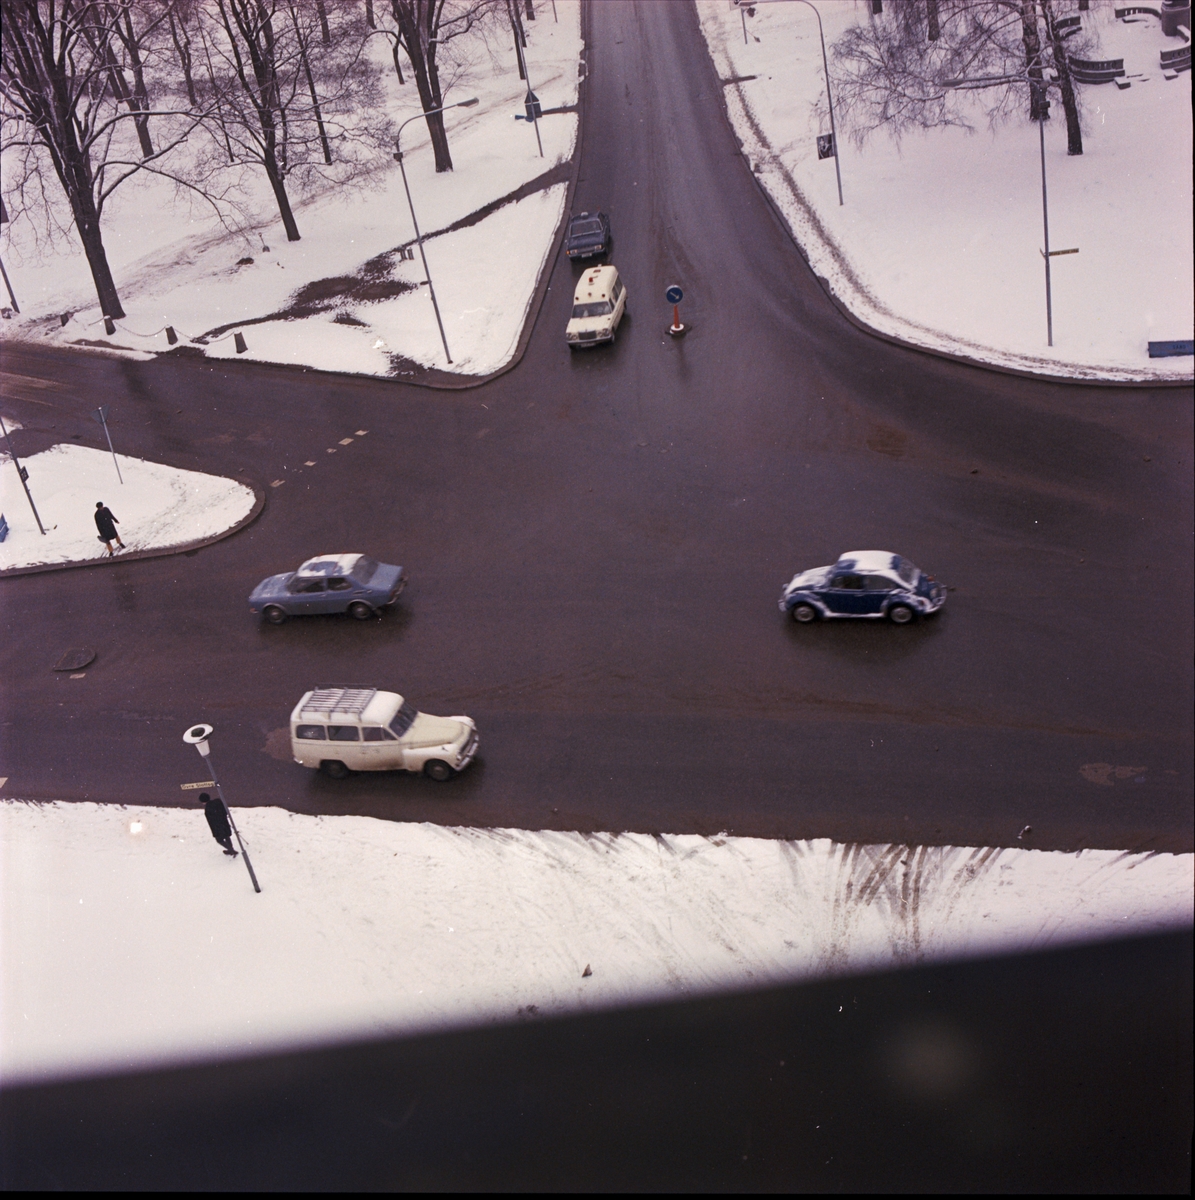 Trafik i korsningen Övre Slottsgatan och Drottninggatan, Uppsala 1970